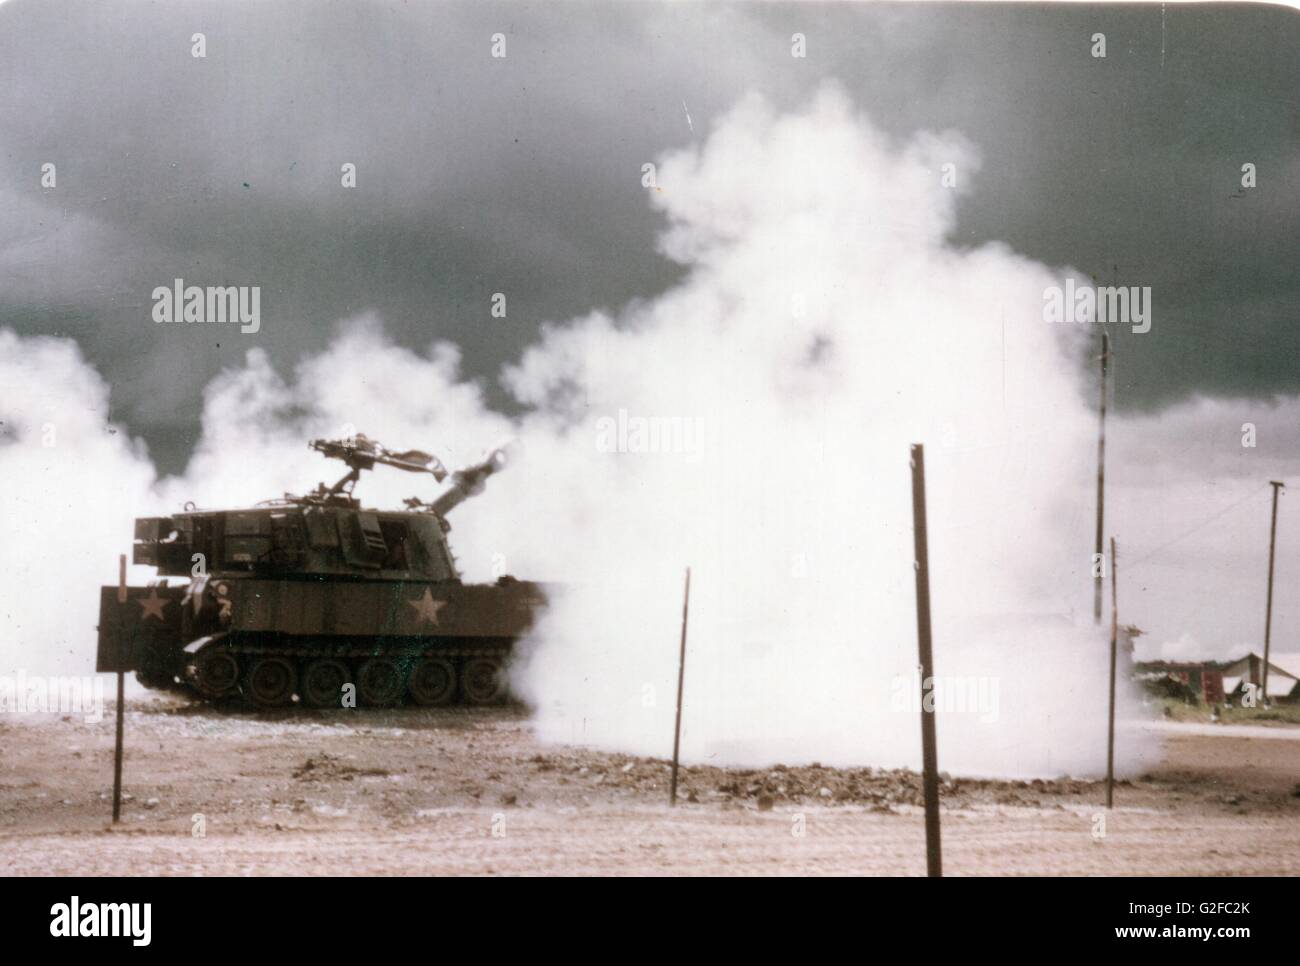 Fuego de artillería americano de 155mm desde la base de la Fuerza de Tarea Australiana en Nui DAT, Provincia Phuoc Tuy, Guerra de Vietnam Foto de stock